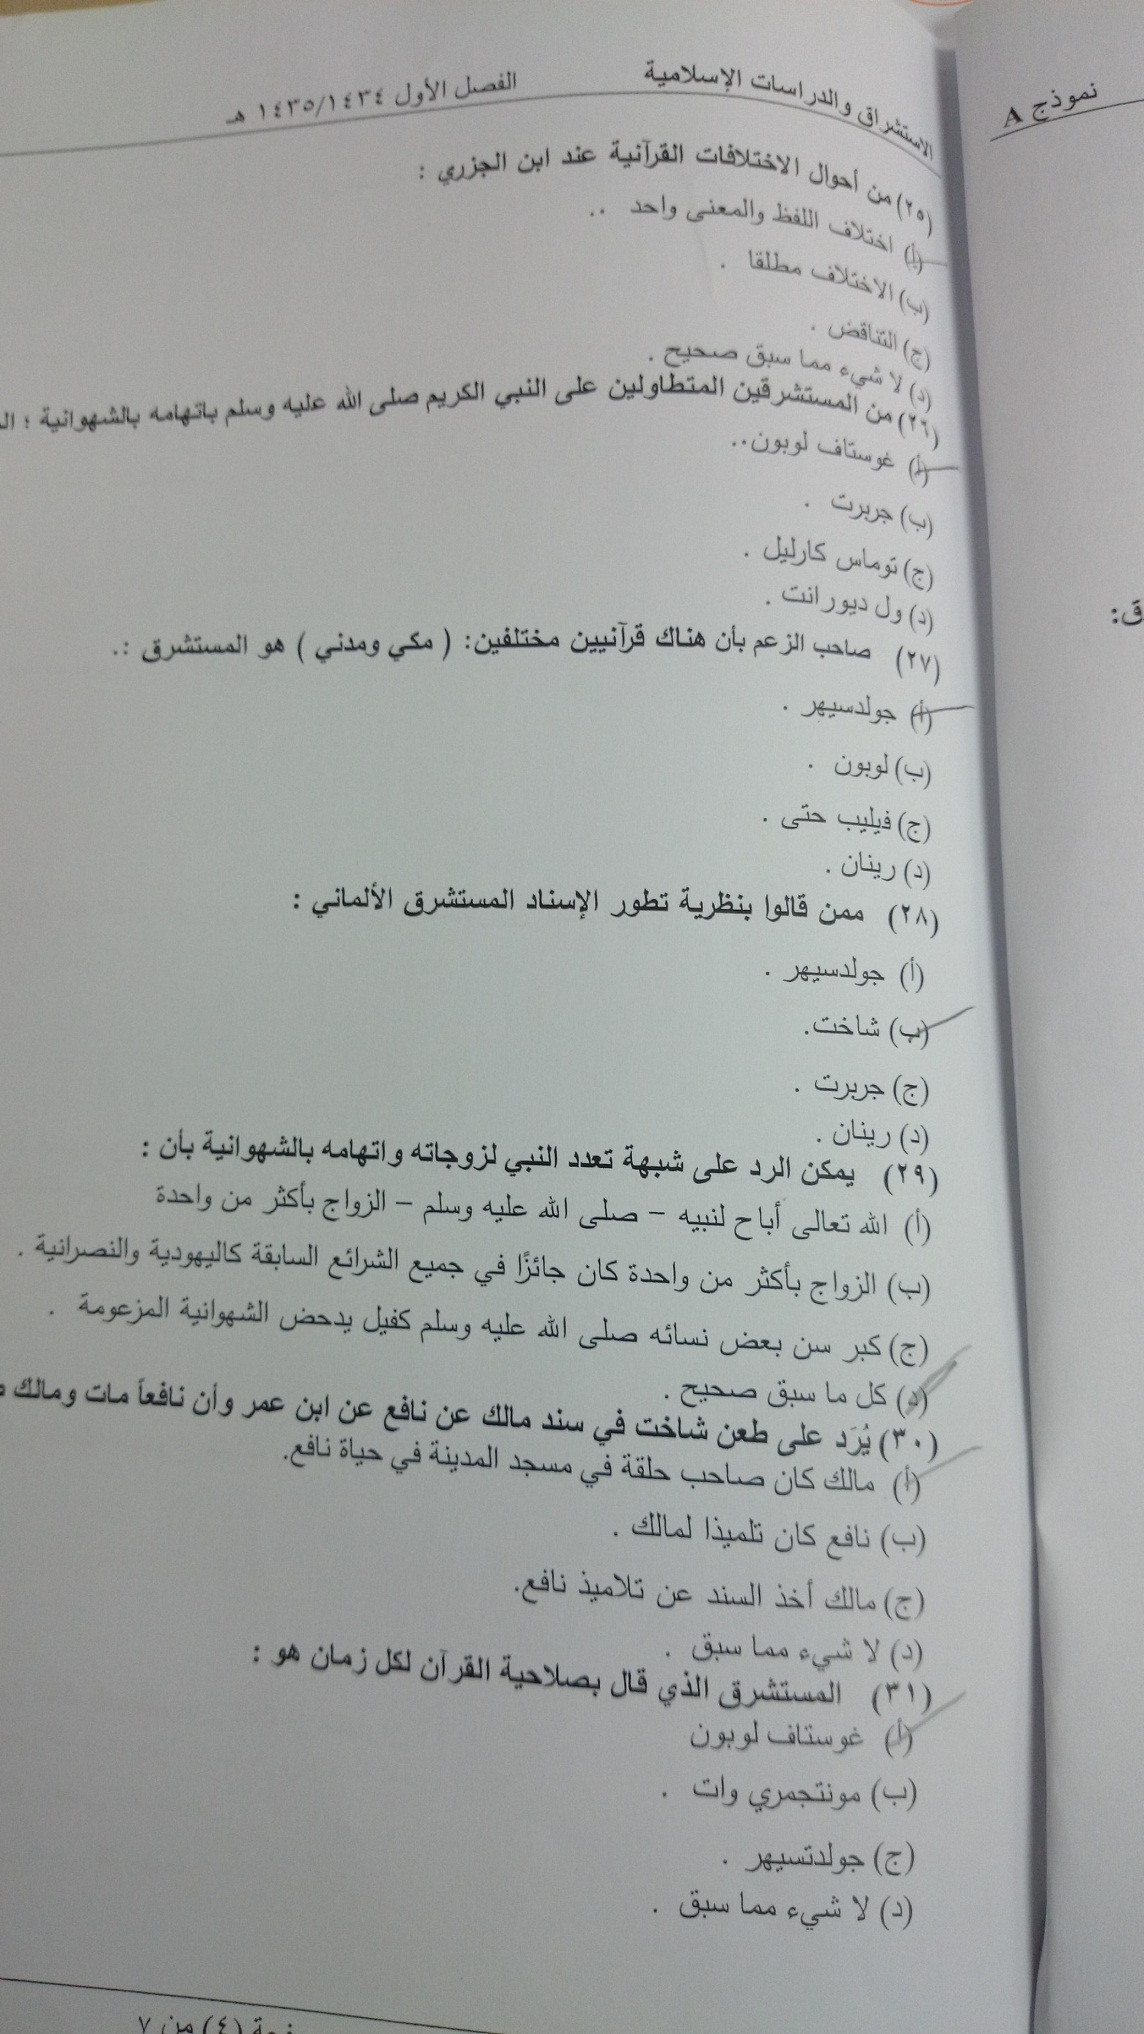 اسئلة اختبار مادة الاستشراق والدراسات الإسلامية الفصل الدراسي الأول 1435هـ نموذج (a)